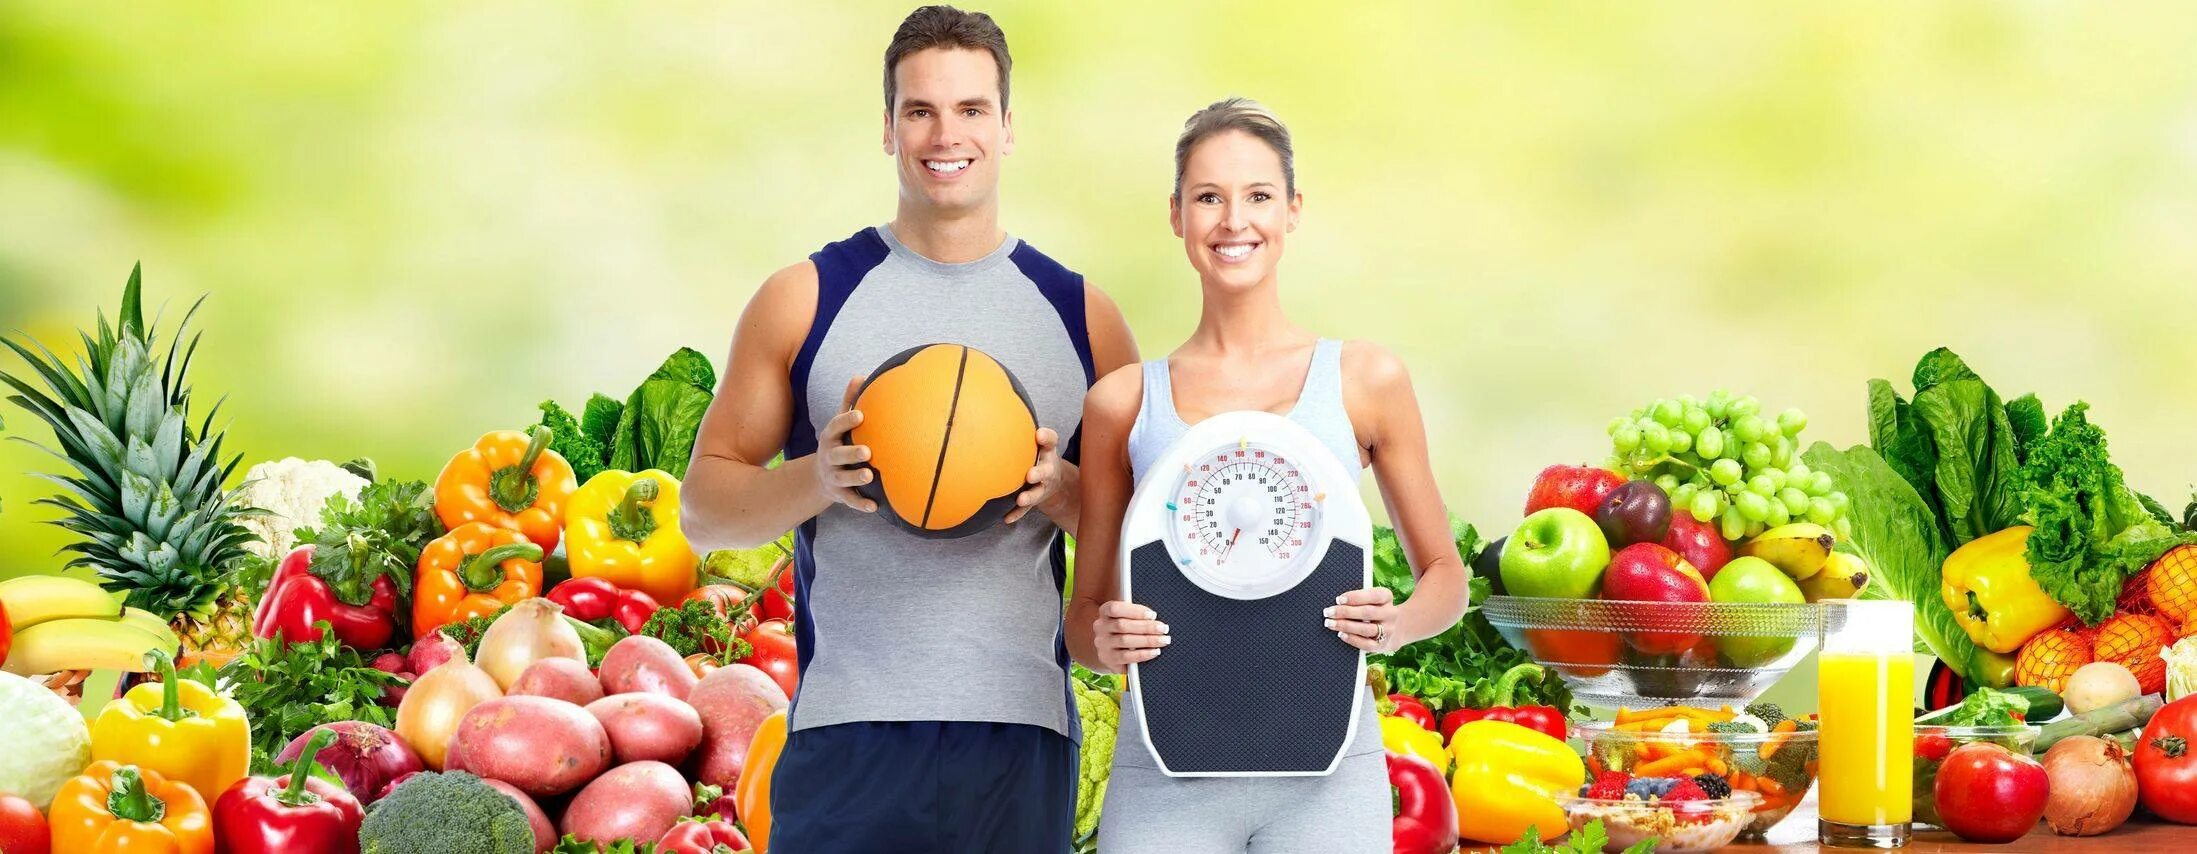 Секреты здоровой жизни. Здоровое питание. ЗОЖ питание. Здоровое питание и фитнес. Здоровый человек.